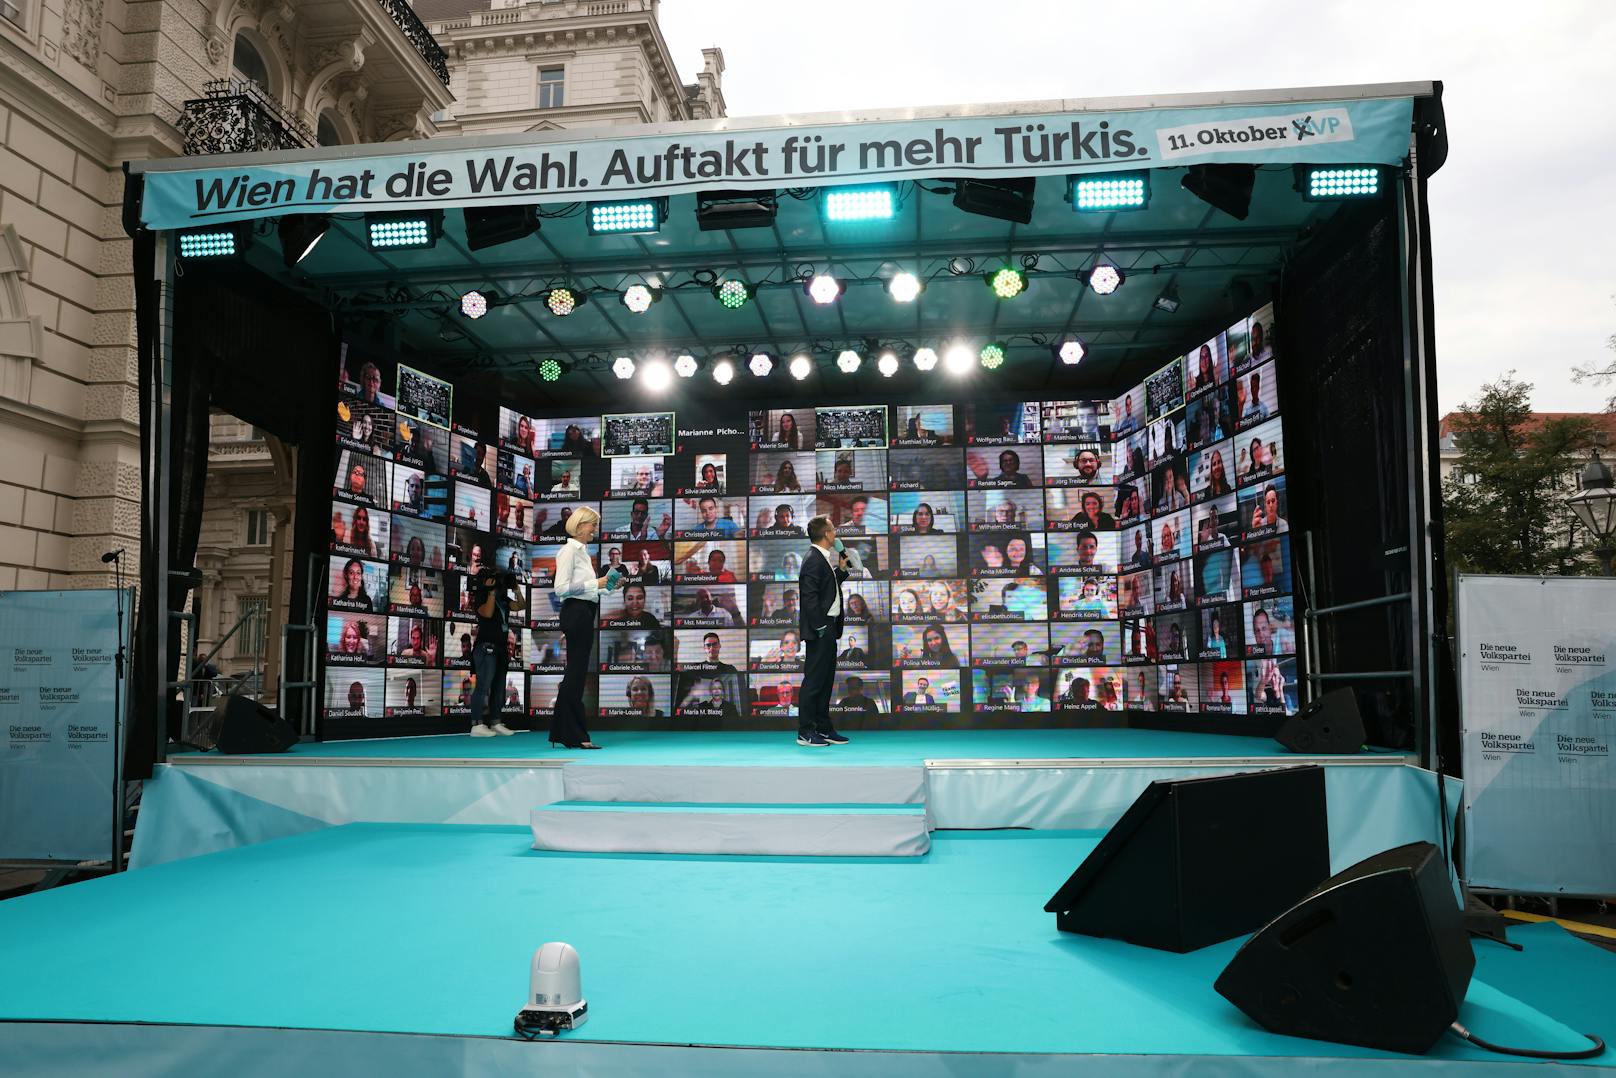 ÖVP-Landesgeschäftsführerin Bernadette Arnoldner und ÖVP-Sprecher Peter L. Eppinger eröffneten das Event vor der riesigen Video-Wall. Dutzende Sympathisanten und Funktionäre wurden per Live-Stream zugeschalten.